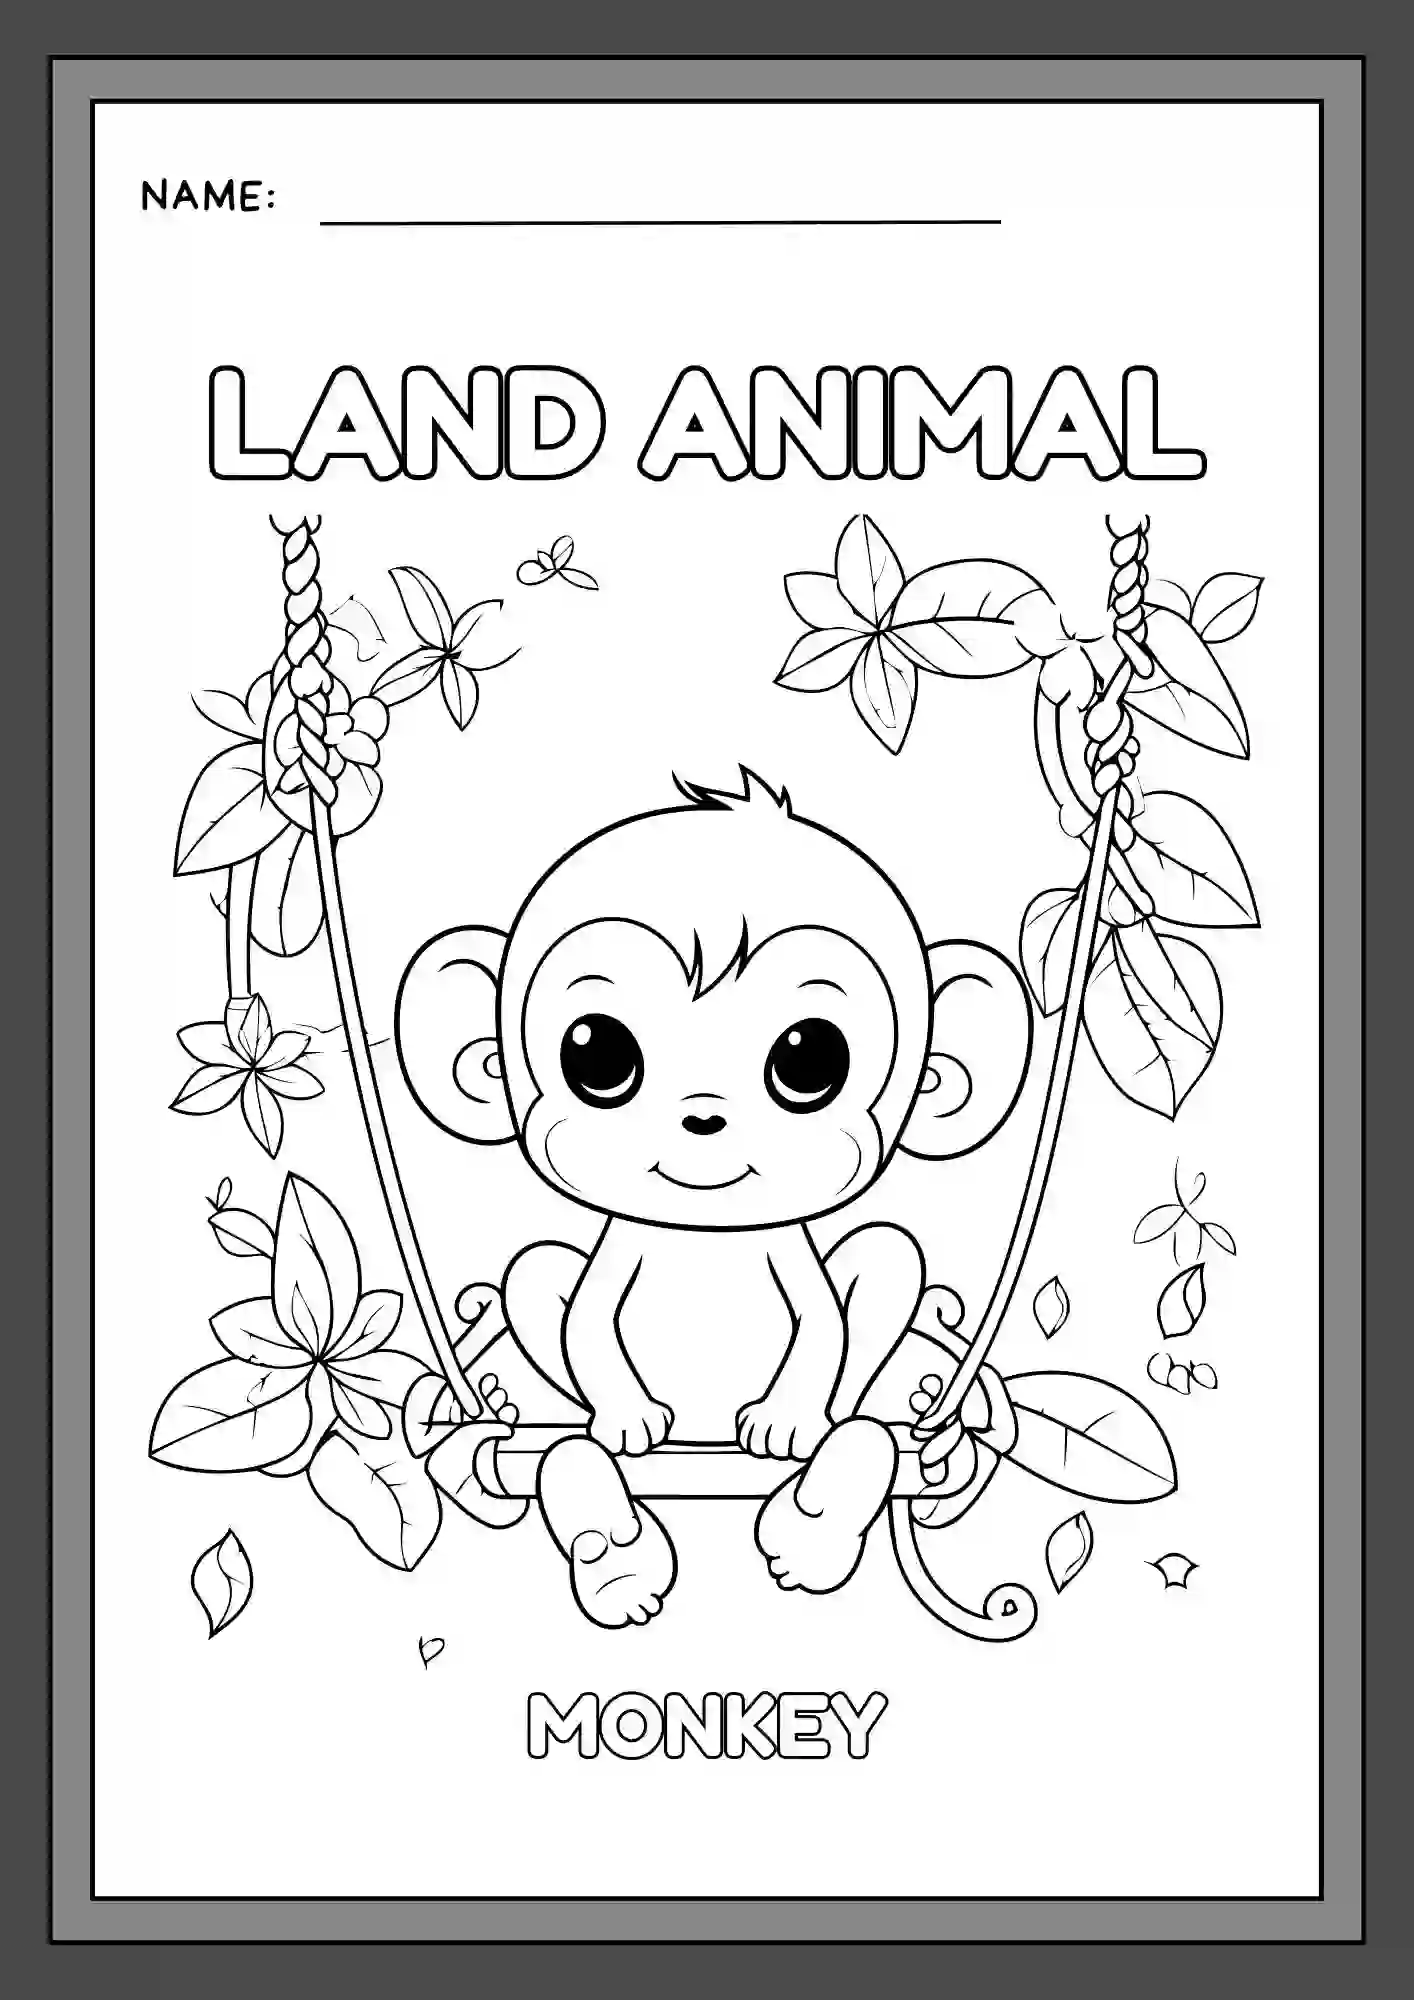 Land Animals Coloring Worksheets For Kindergarten Lkg & Ukg (monkey)